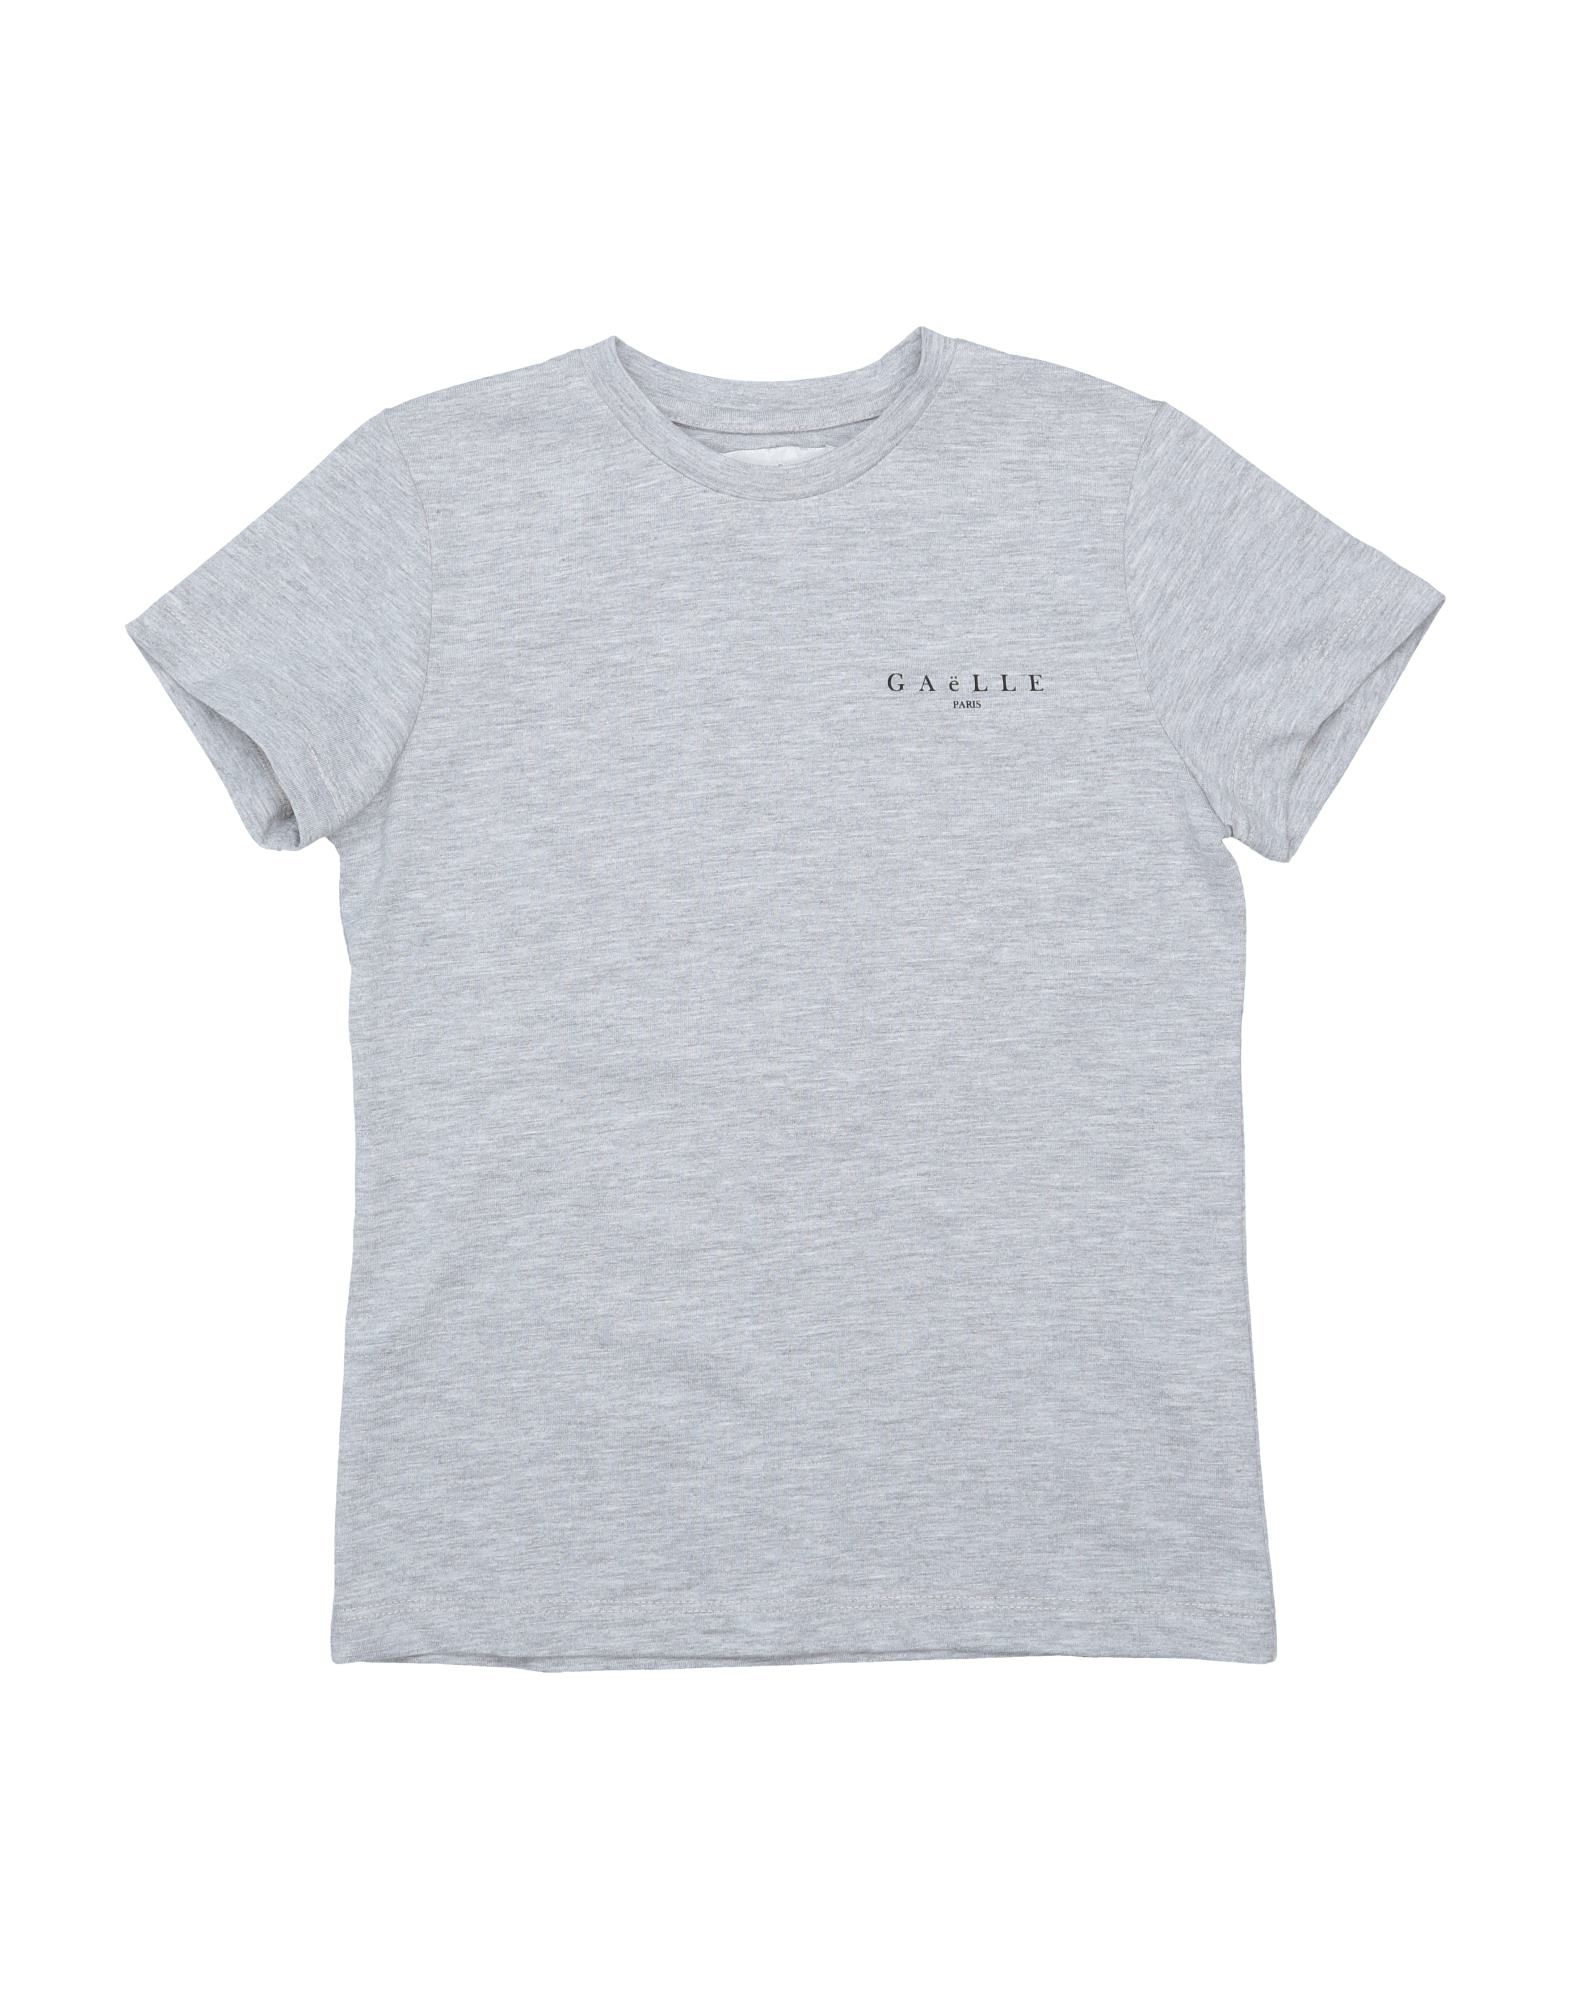 Gaelle Paris Kids' T-shirts In Grey